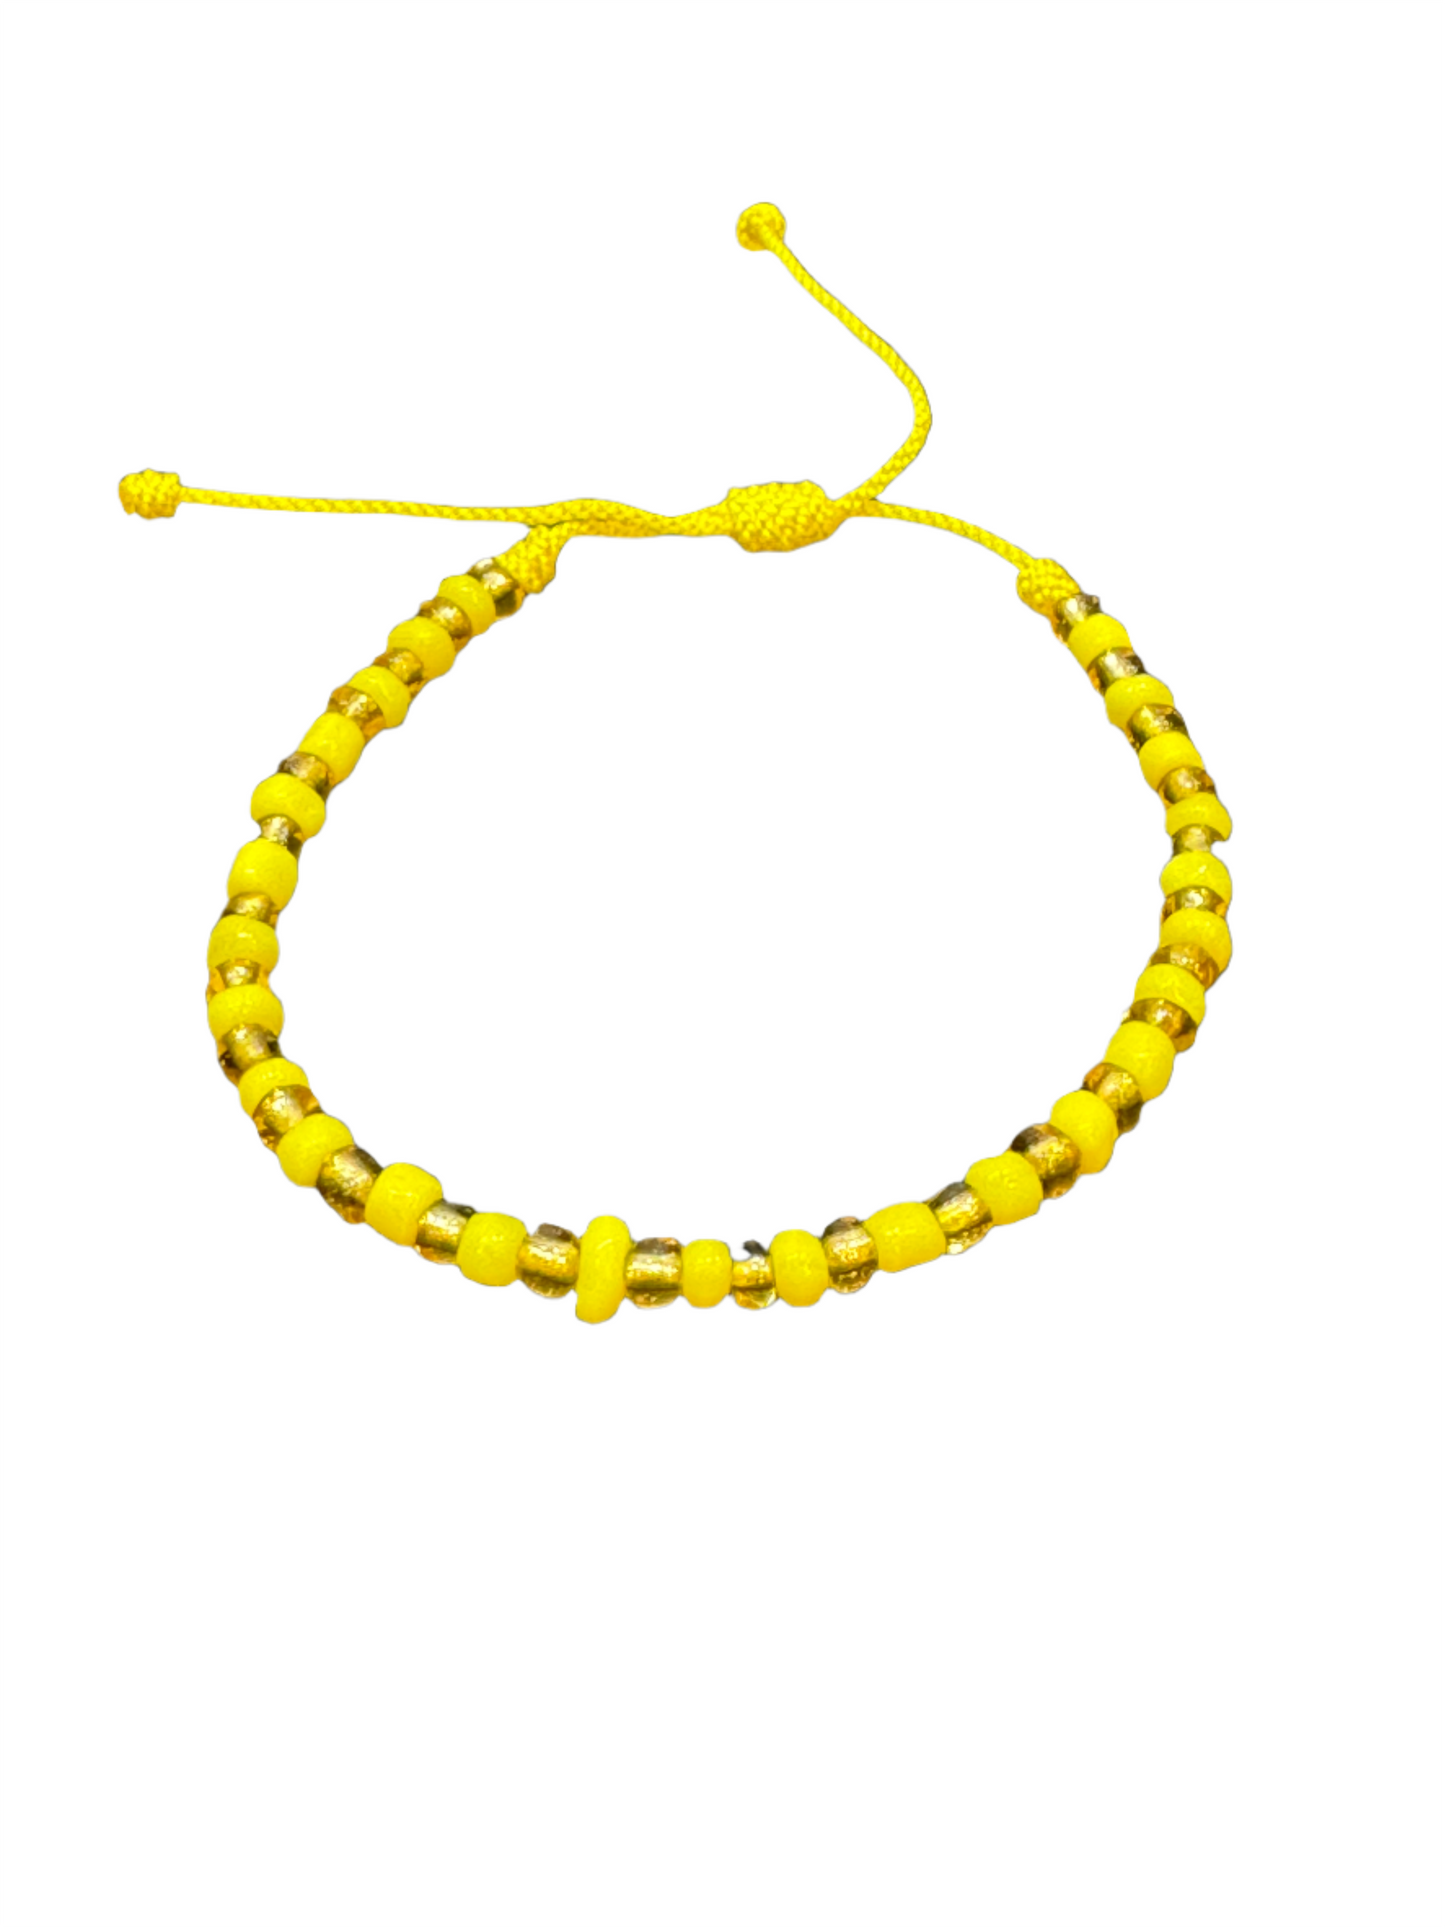 Orisha Ochun/Oshun Beaded Pull String Bracelet Gold and Yellow